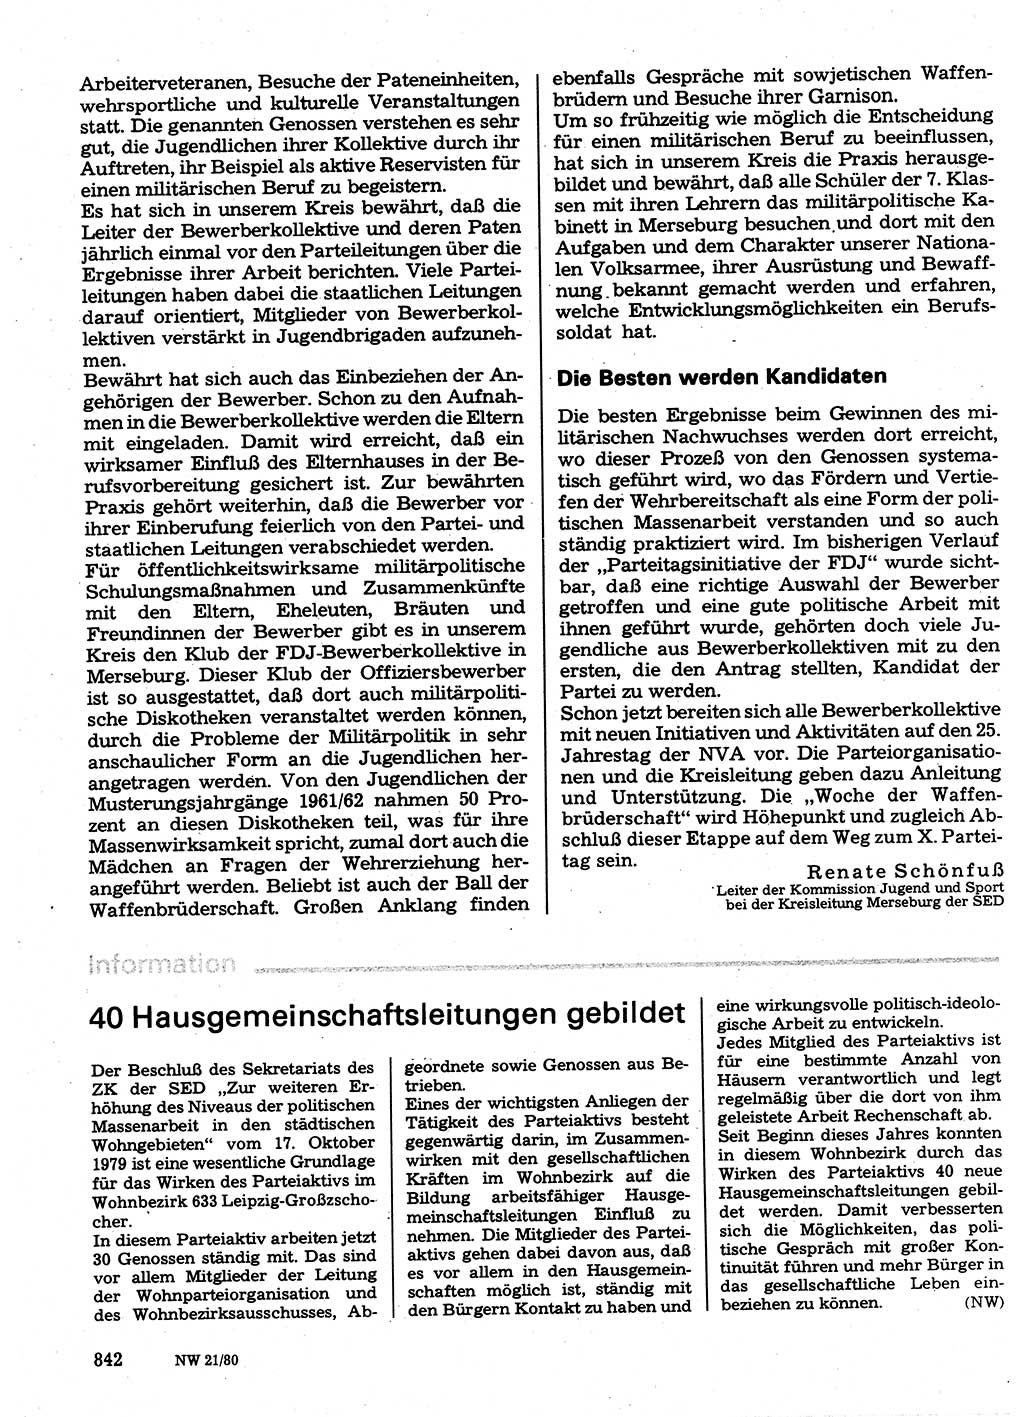 Neuer Weg (NW), Organ des Zentralkomitees (ZK) der SED (Sozialistische Einheitspartei Deutschlands) für Fragen des Parteilebens, 35. Jahrgang [Deutsche Demokratische Republik (DDR)] 1980, Seite 842 (NW ZK SED DDR 1980, S. 842)